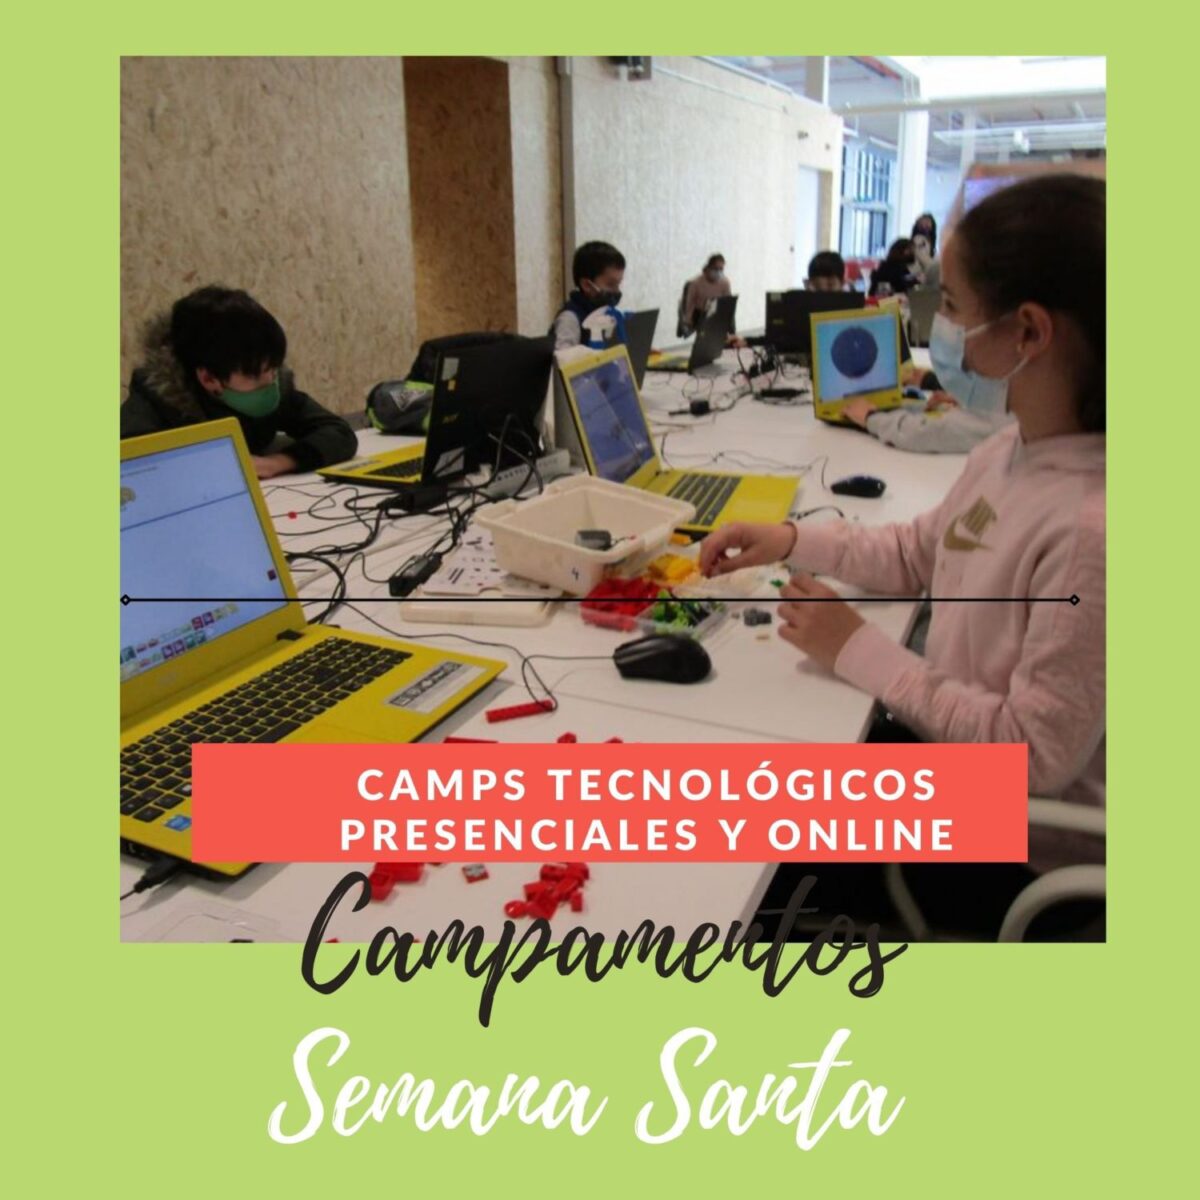 Campamentos Tecnológicos Semana Santa en Madrid